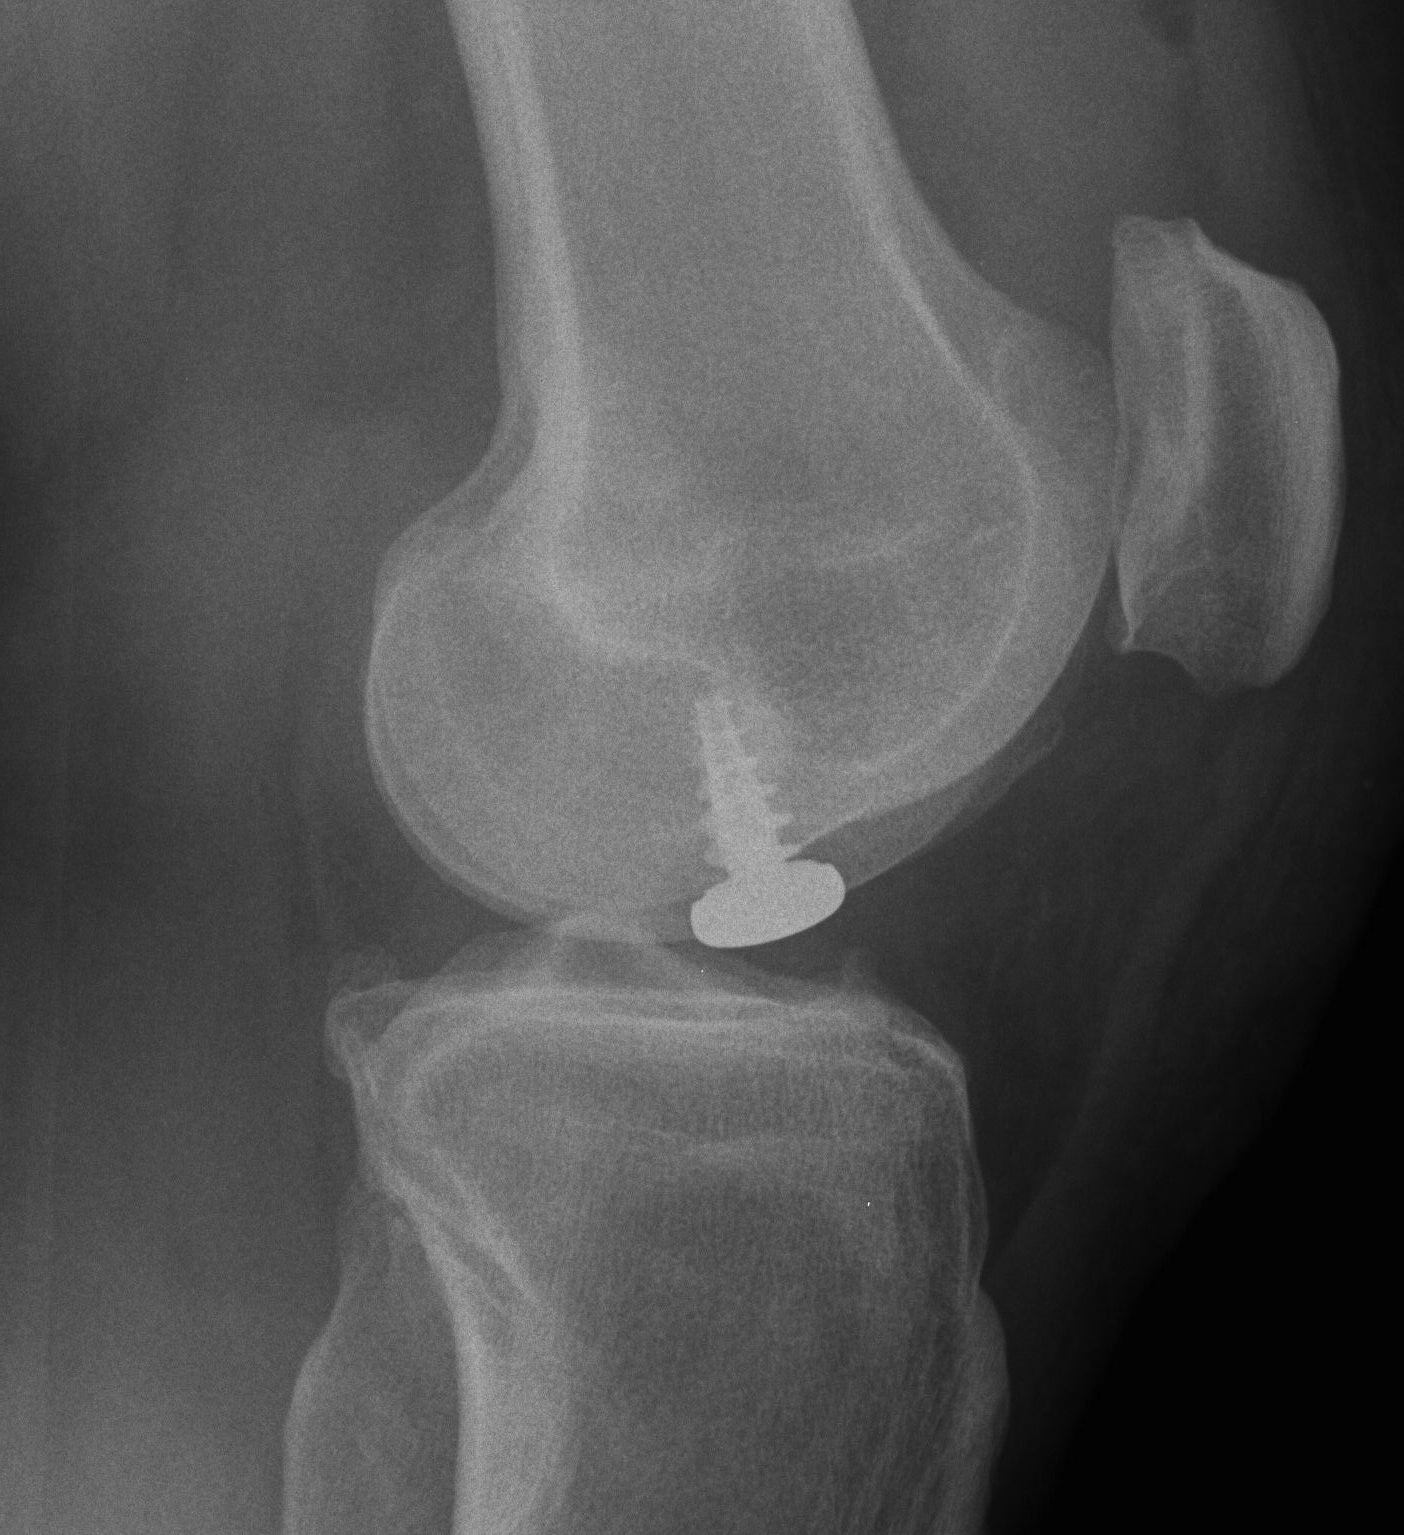 Knee Hemicap Lateral